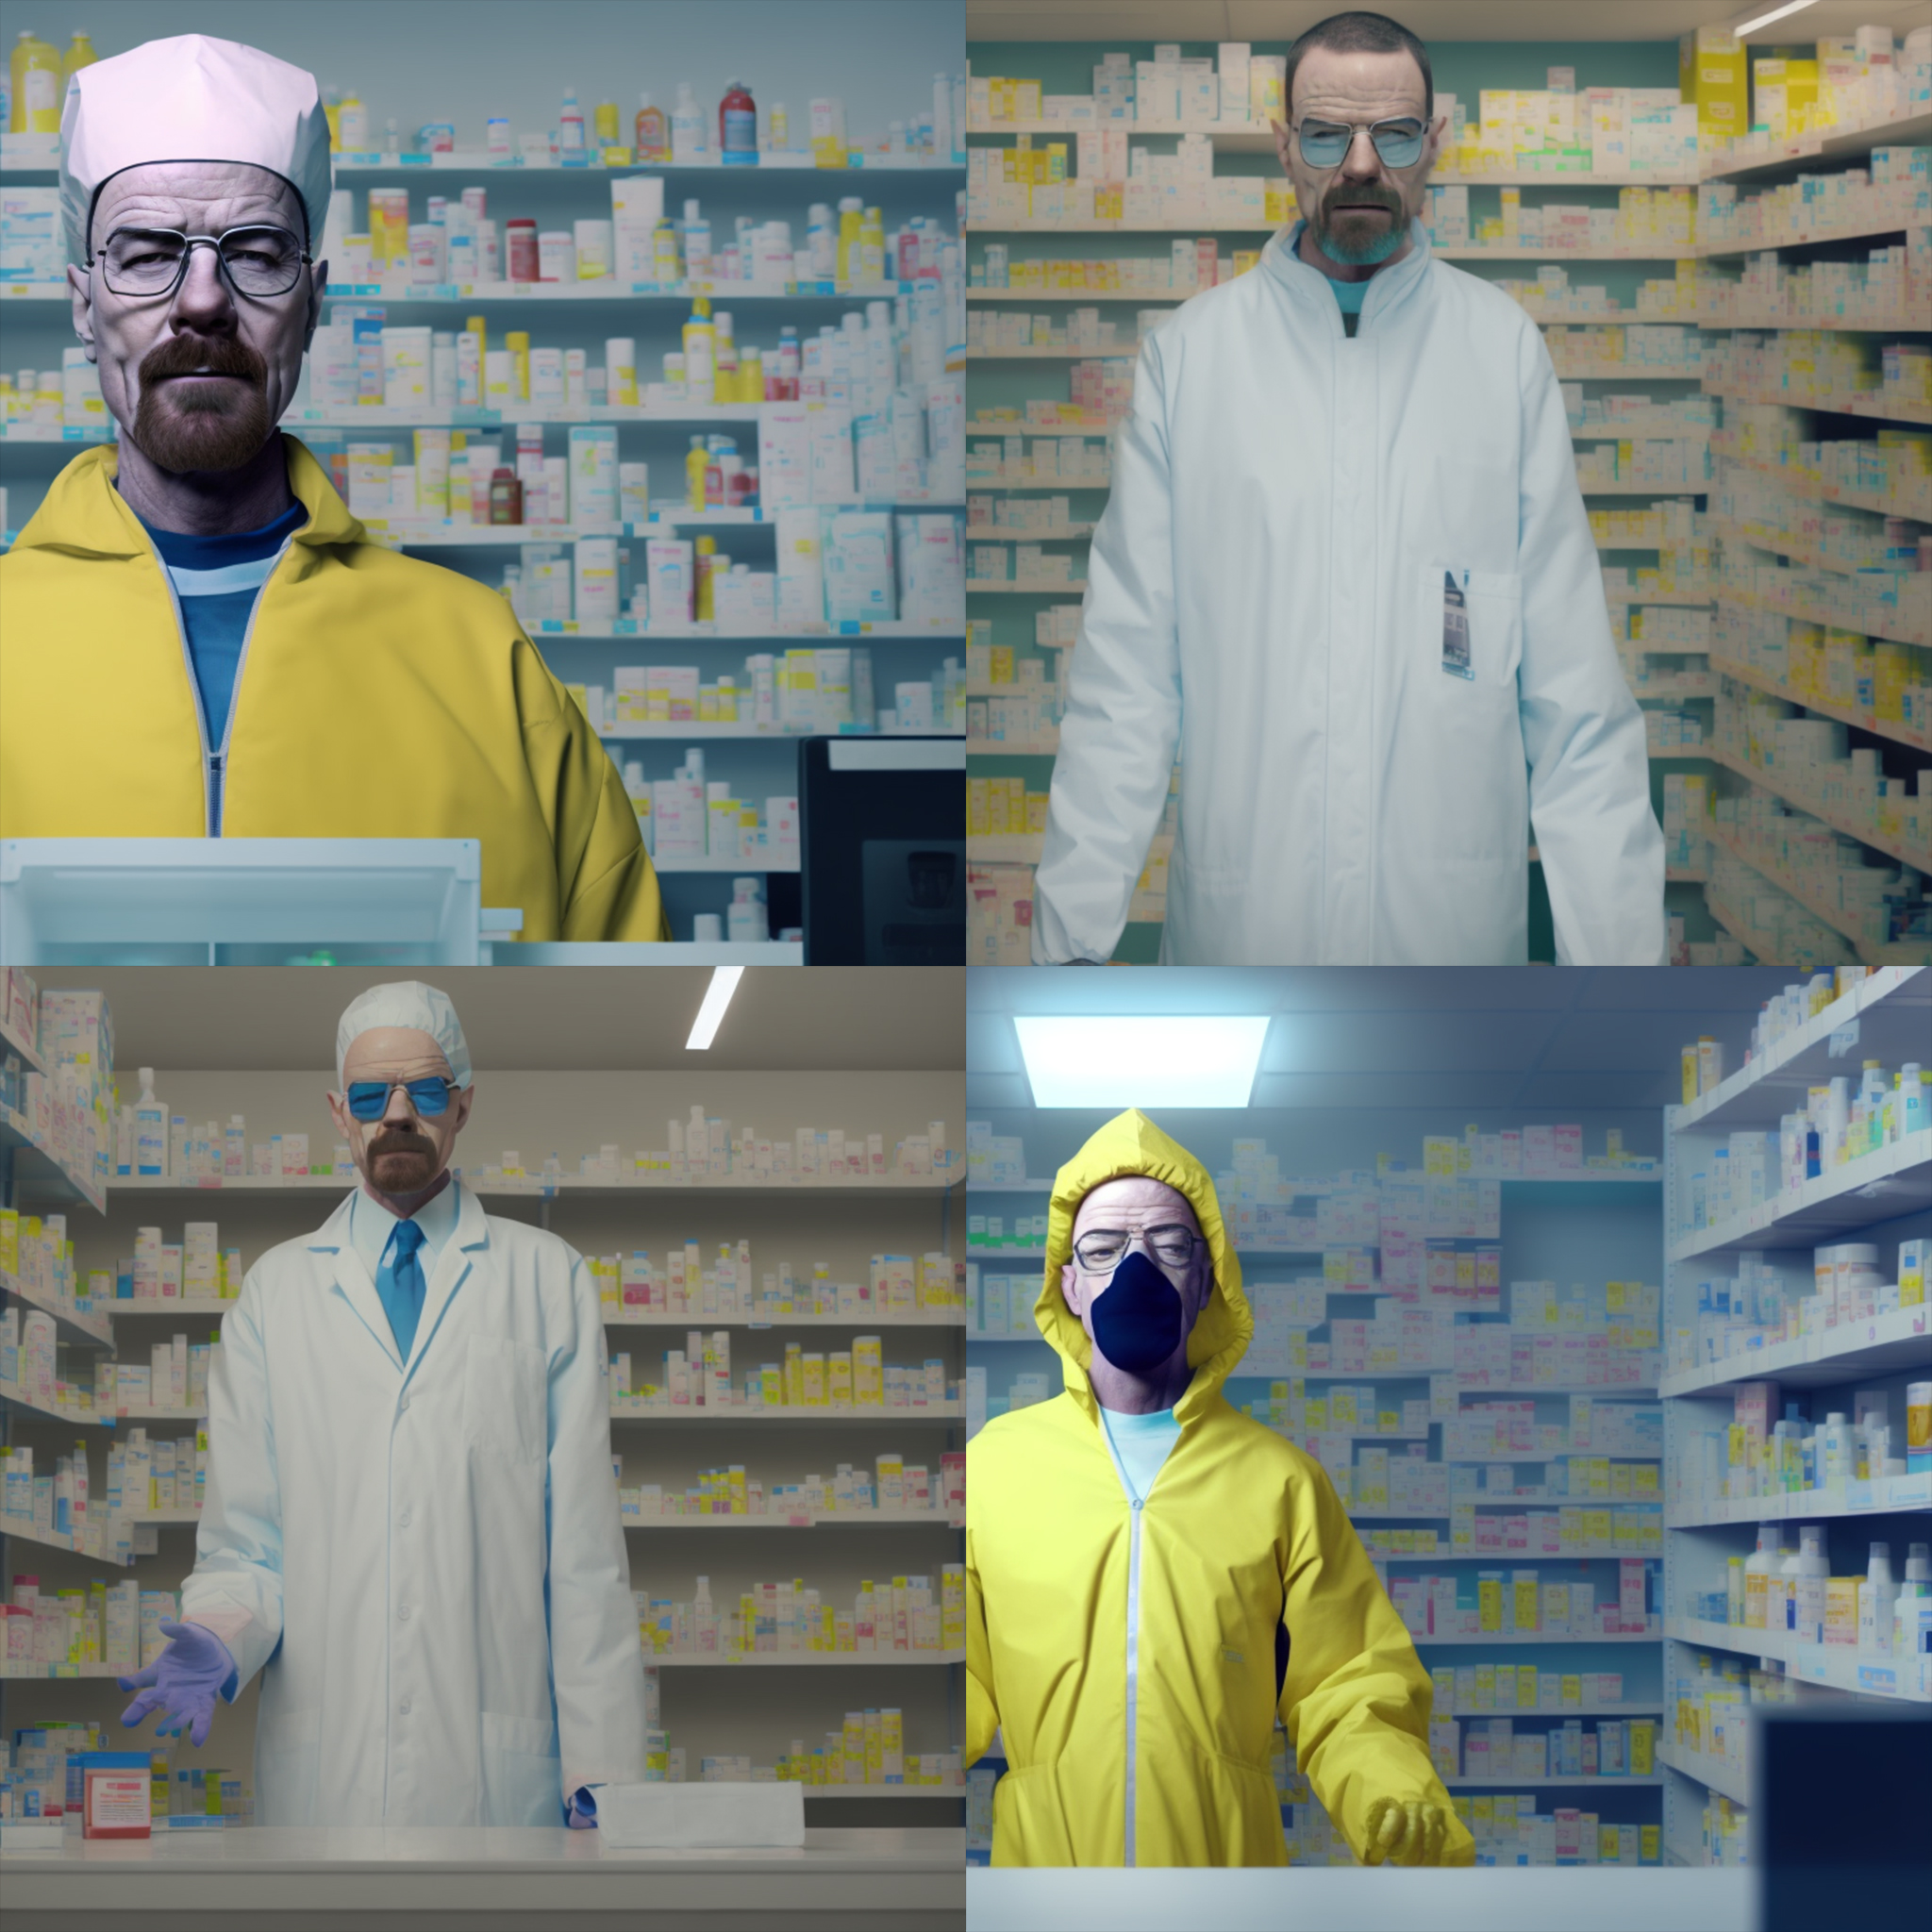 Imagens geradas por IA de Walter White parado em uma farmácia. 